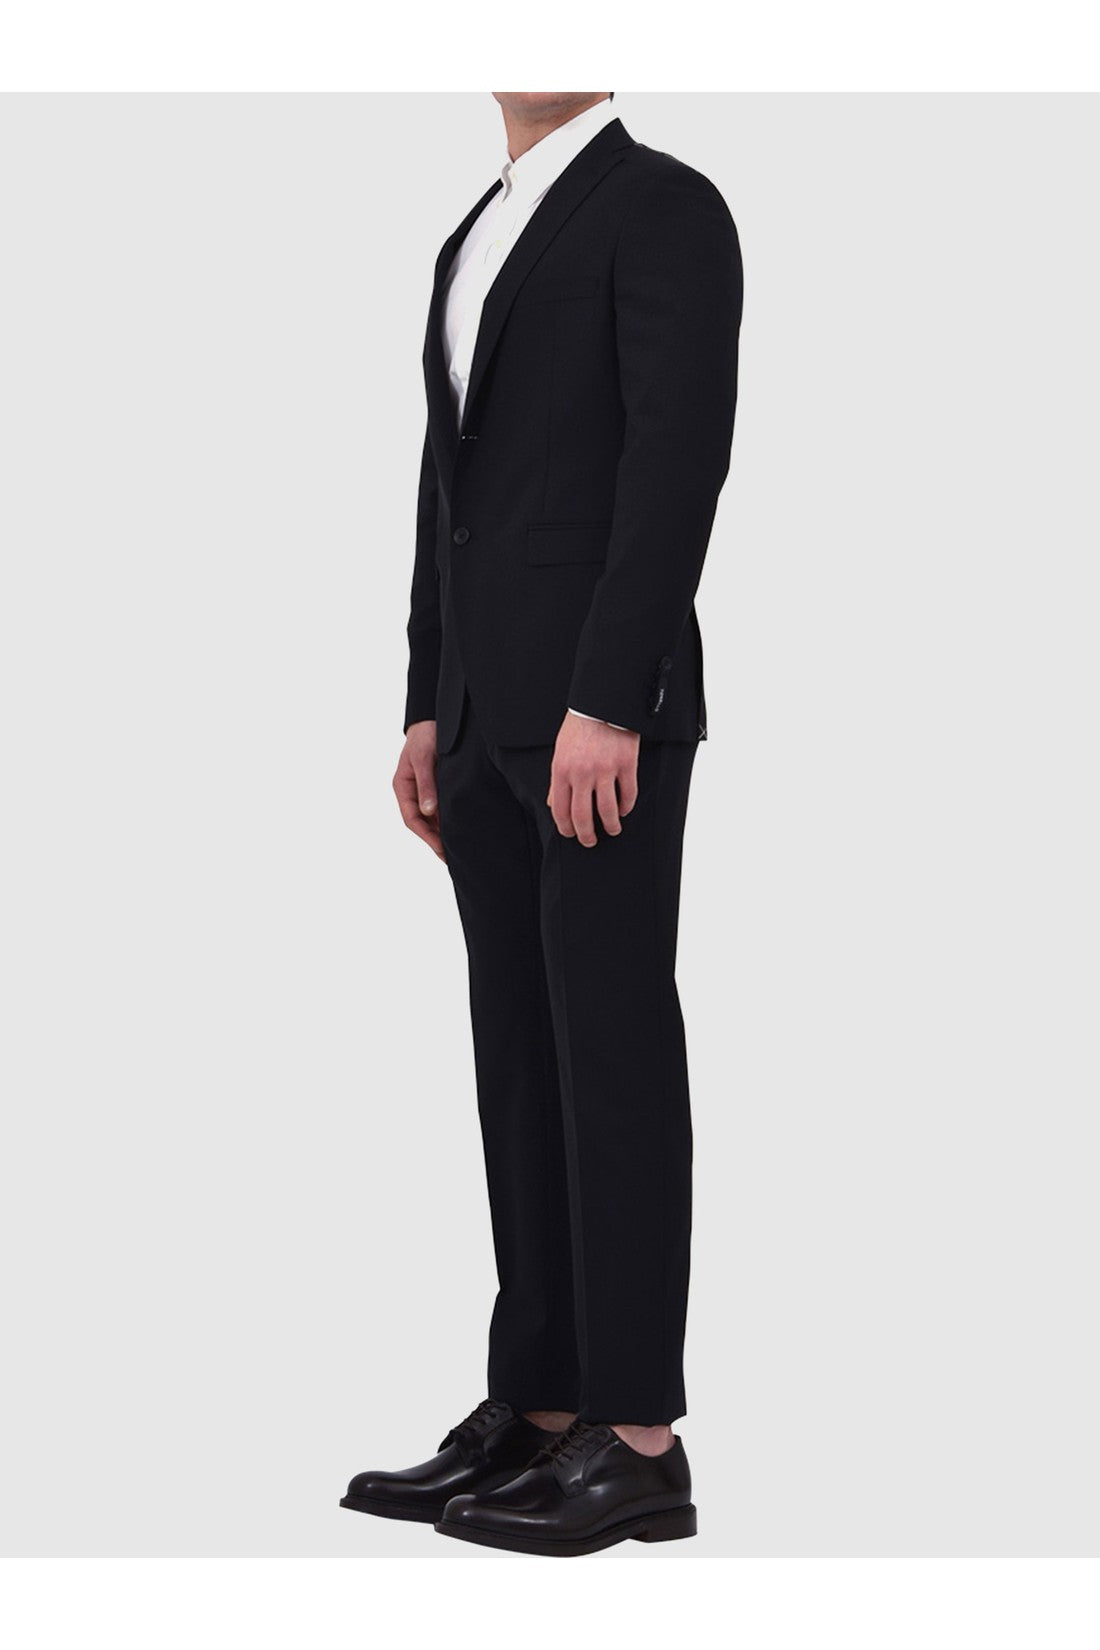 Two-piece black suit